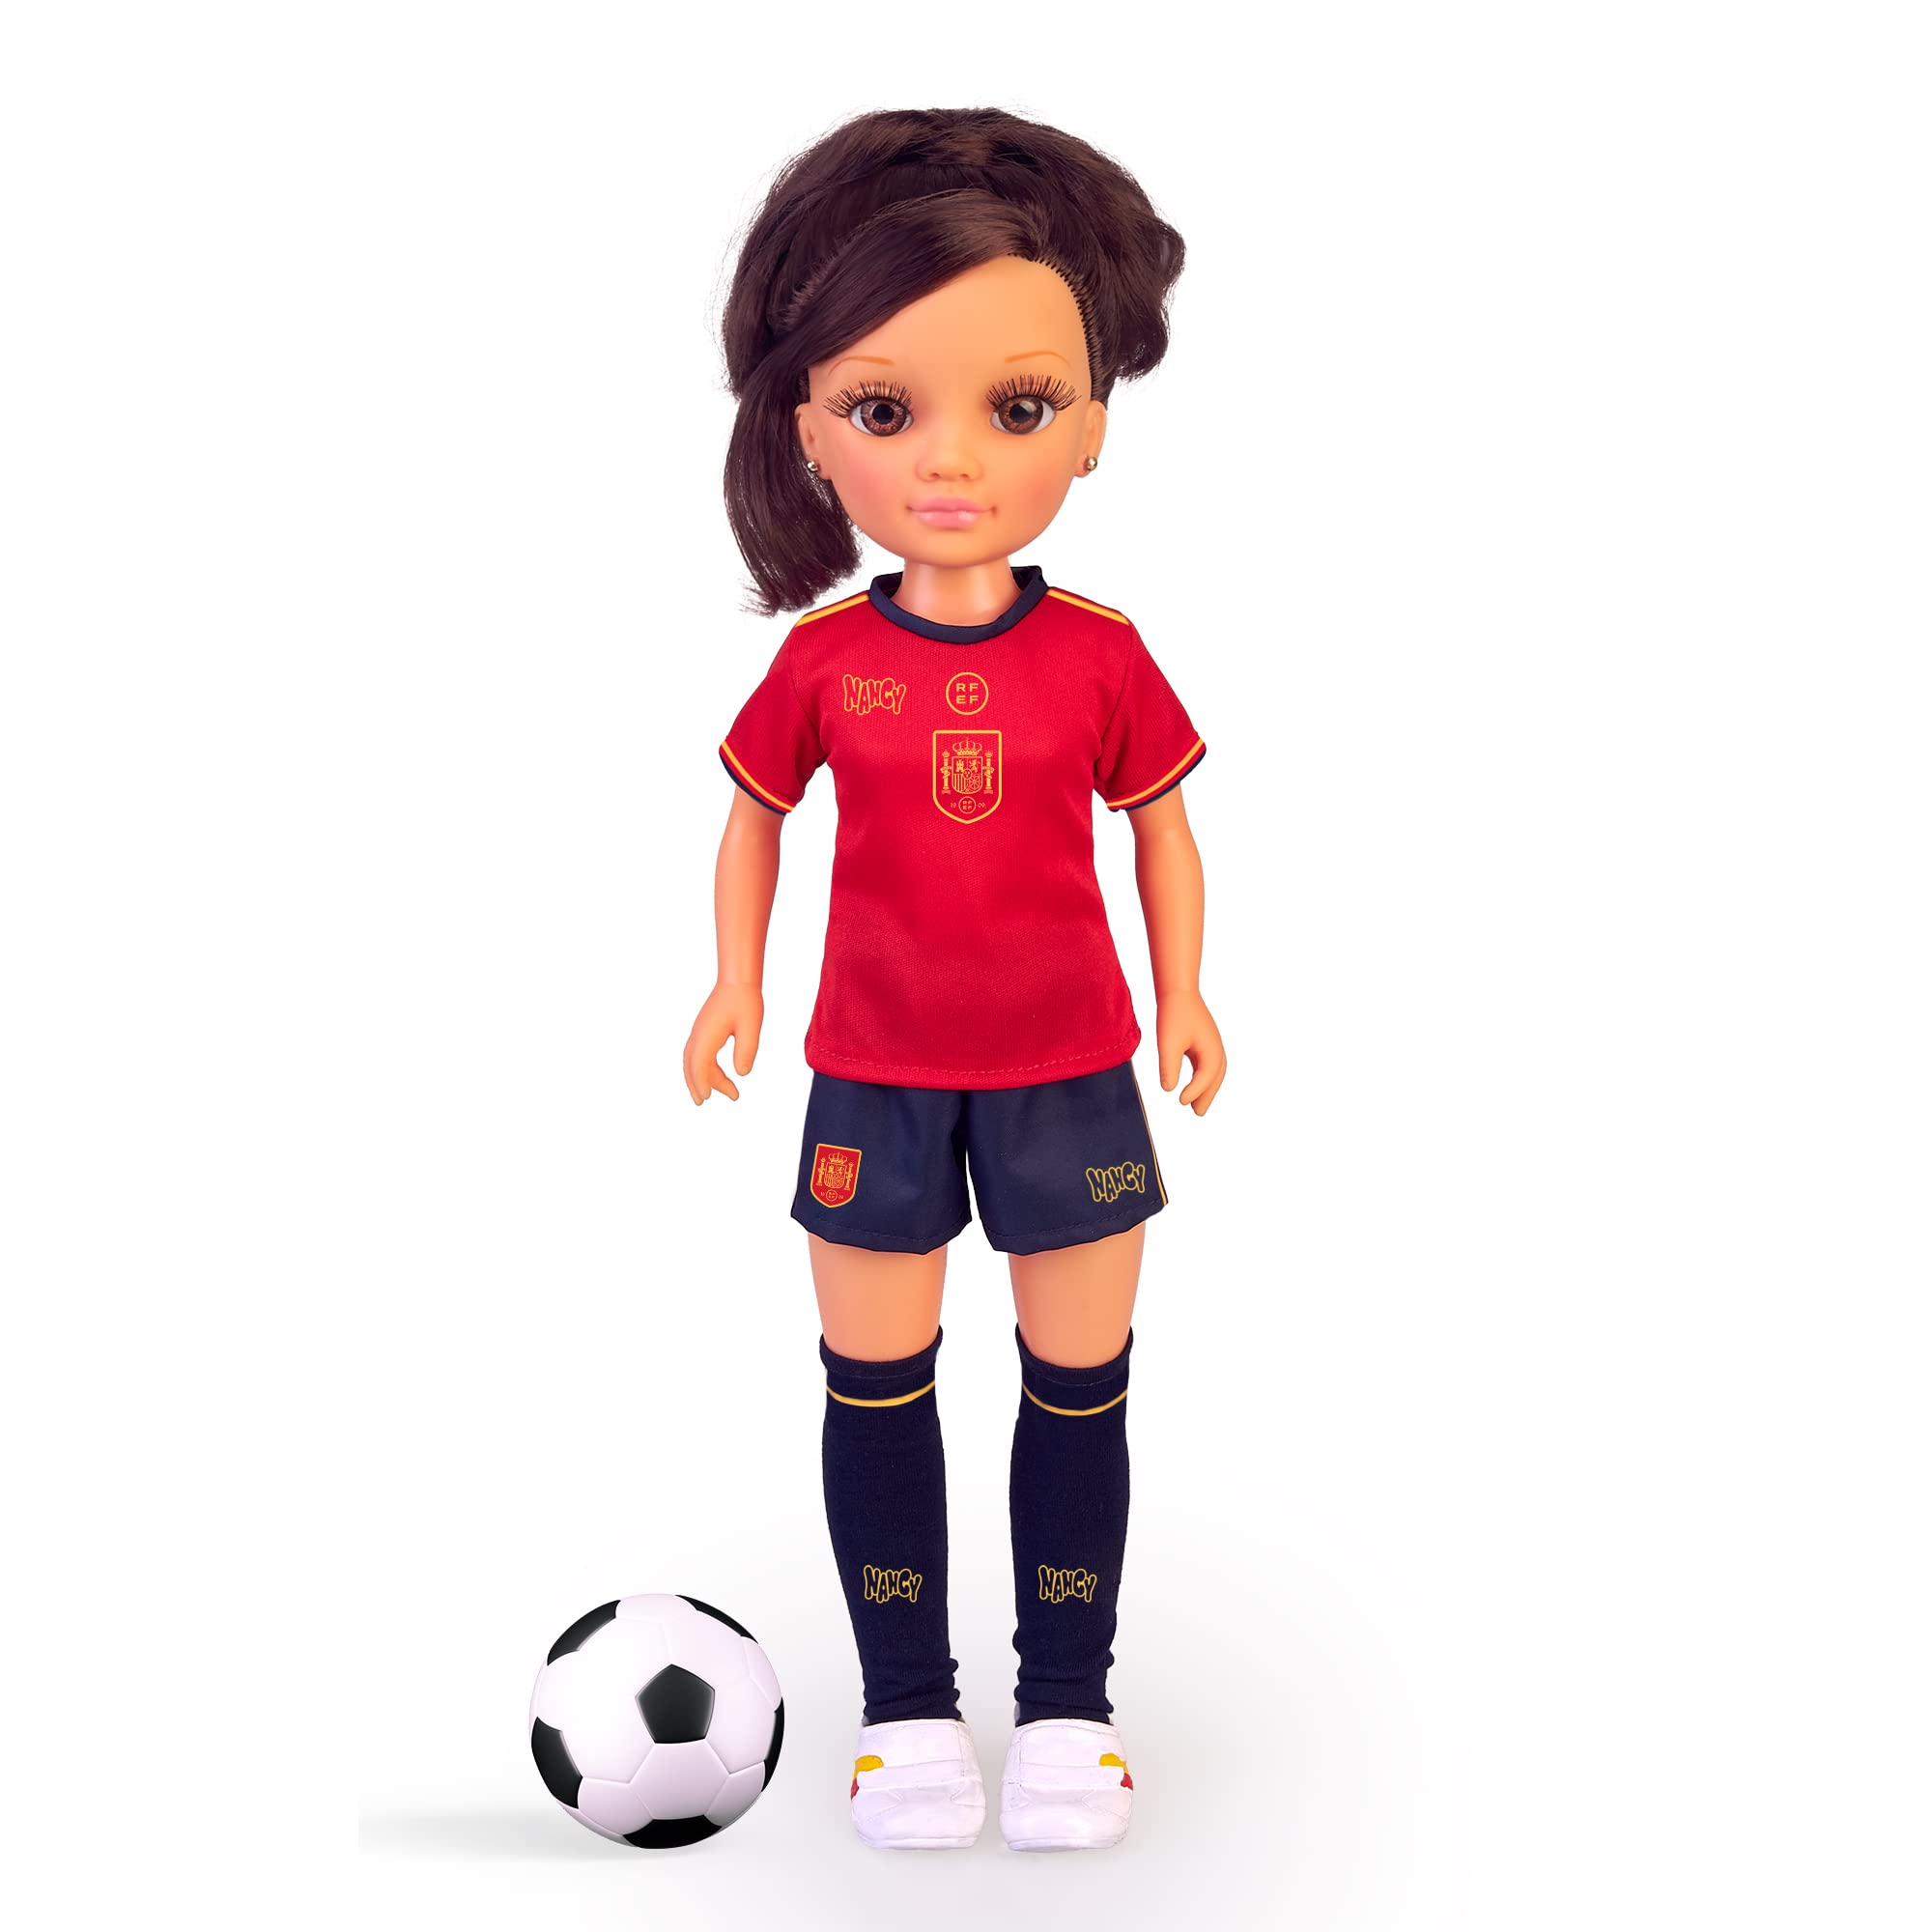 Nancy - Spanische Nationalmannschaft Brünette, Fußball-Puppe in Zusammenarbeit mit der Frauenmannschaft des Fußballs, der Offiziellen spanischen Mannschaft Spaniens und des Hologramms des Königlichen